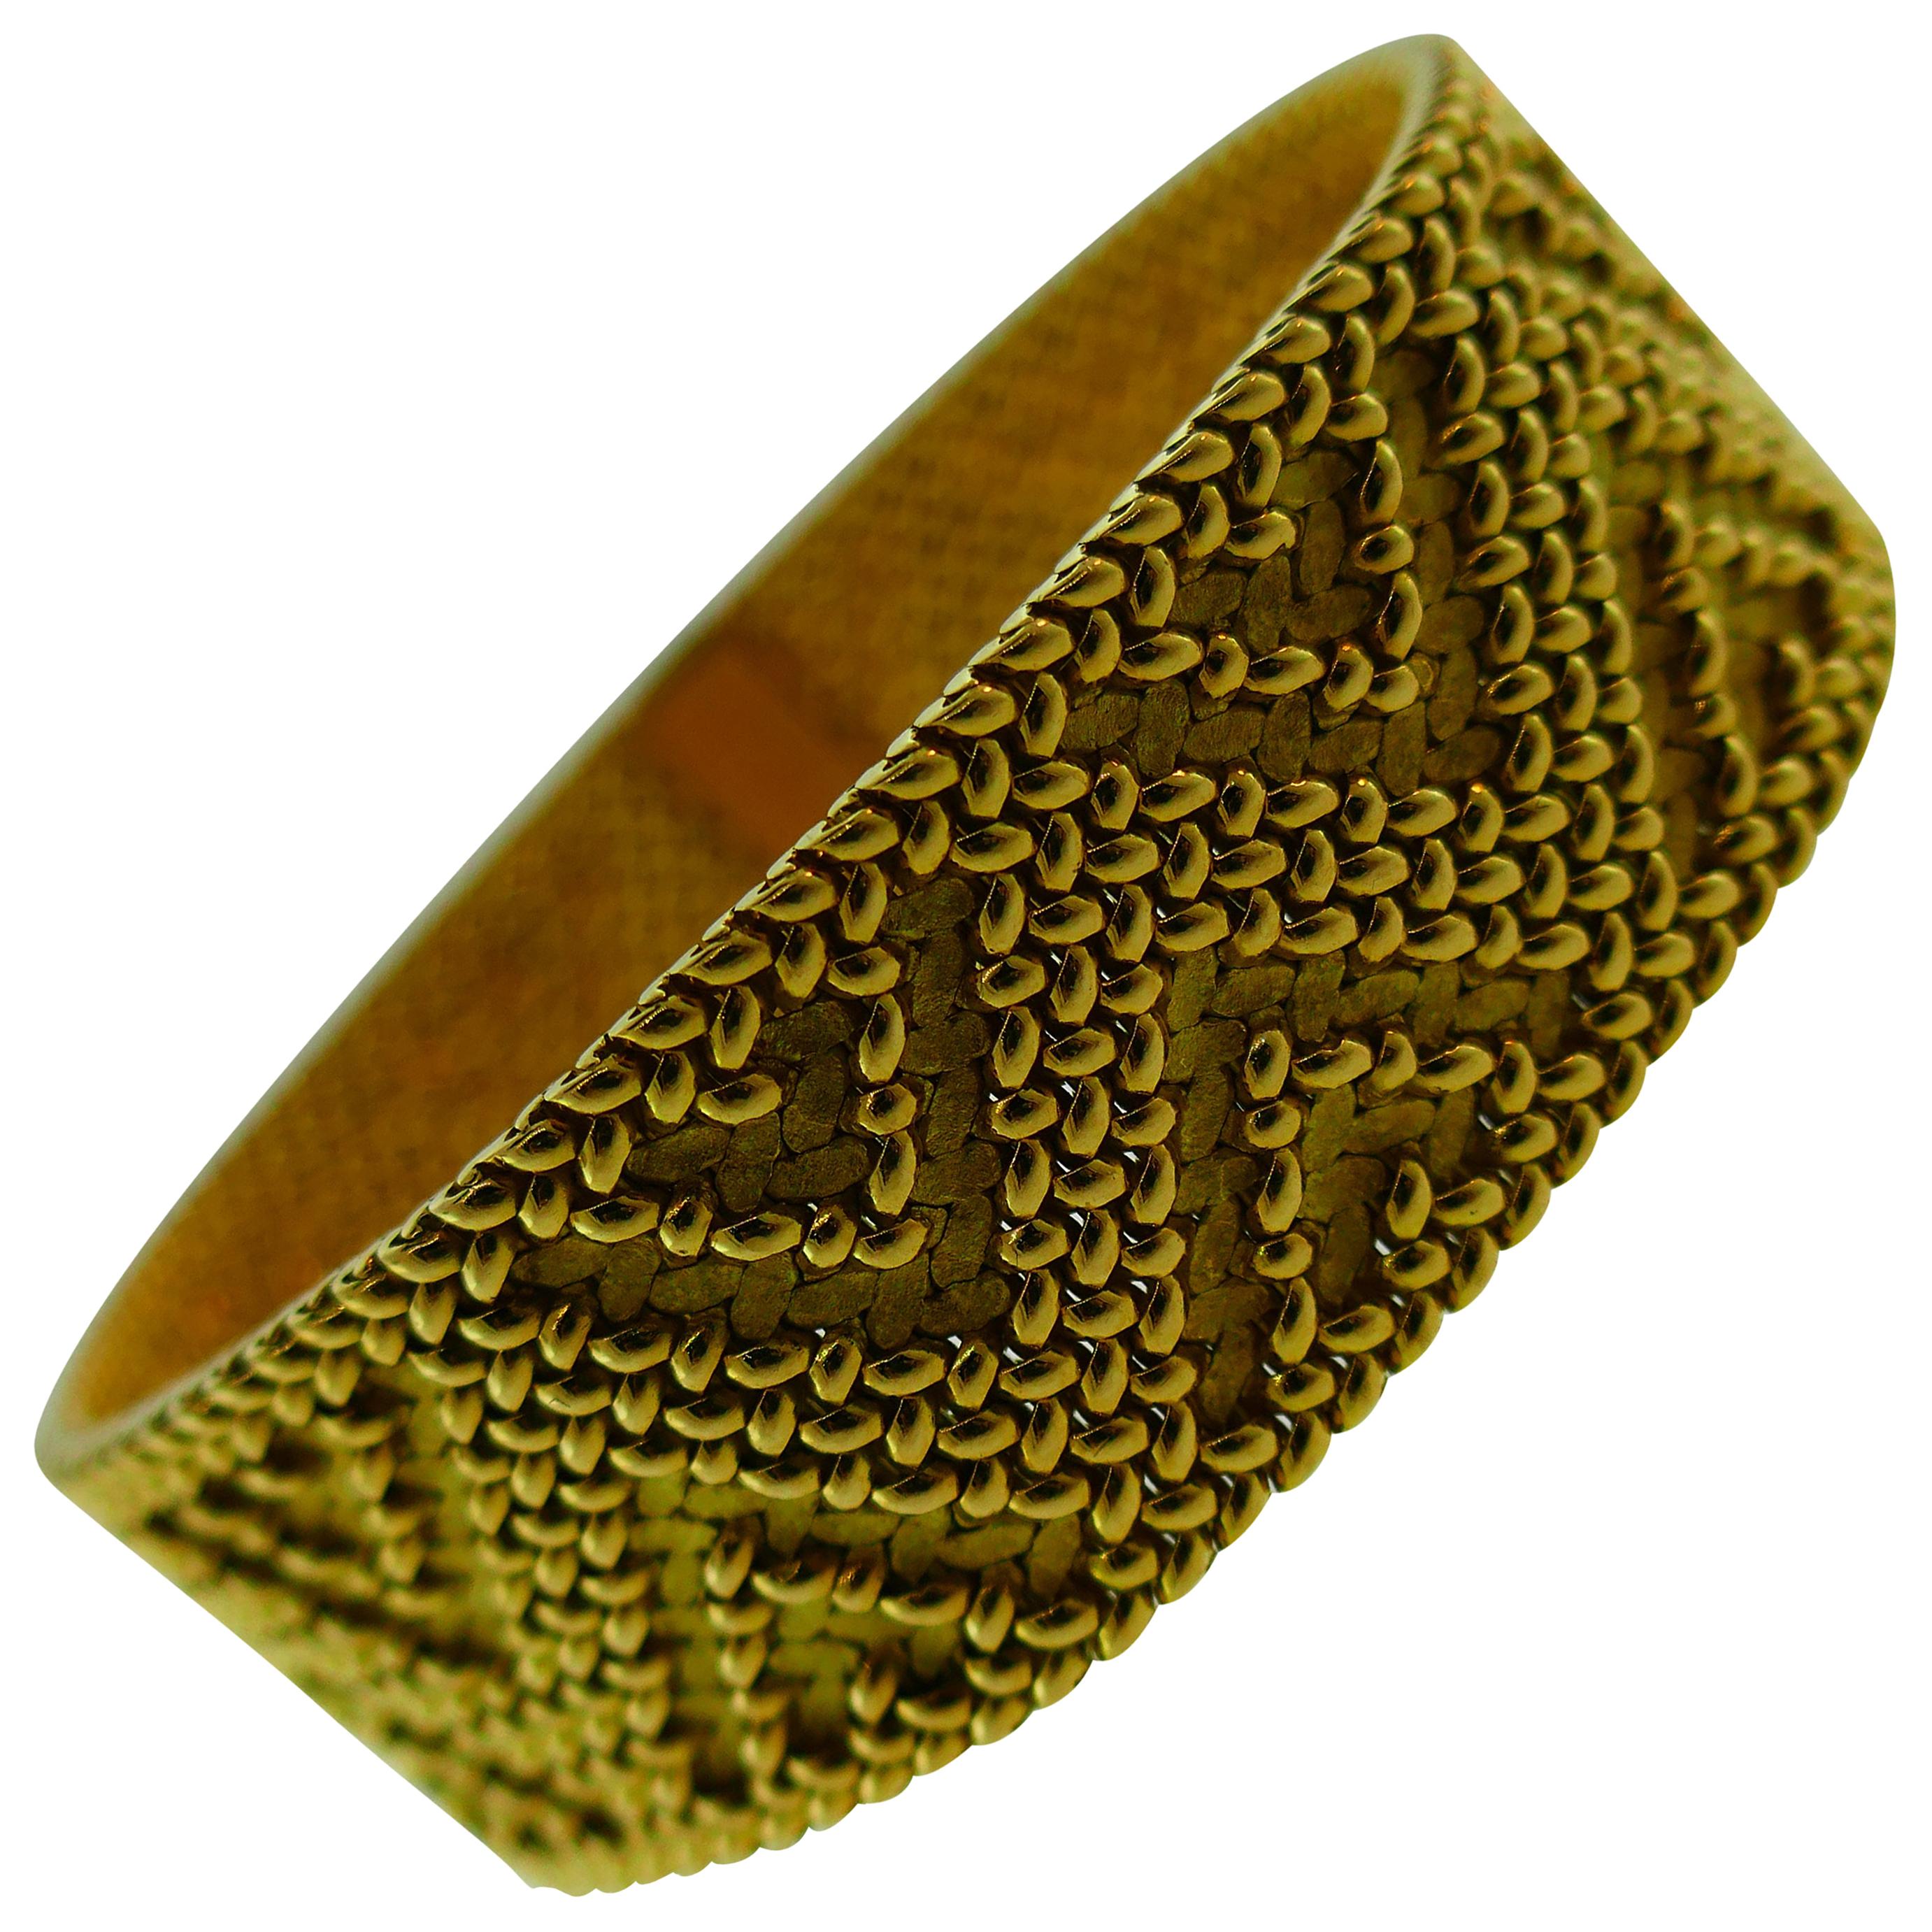 Marchak Paris Georges Lenfant 18 Karat Gold Woven Bracelet circa 1960s Vintage